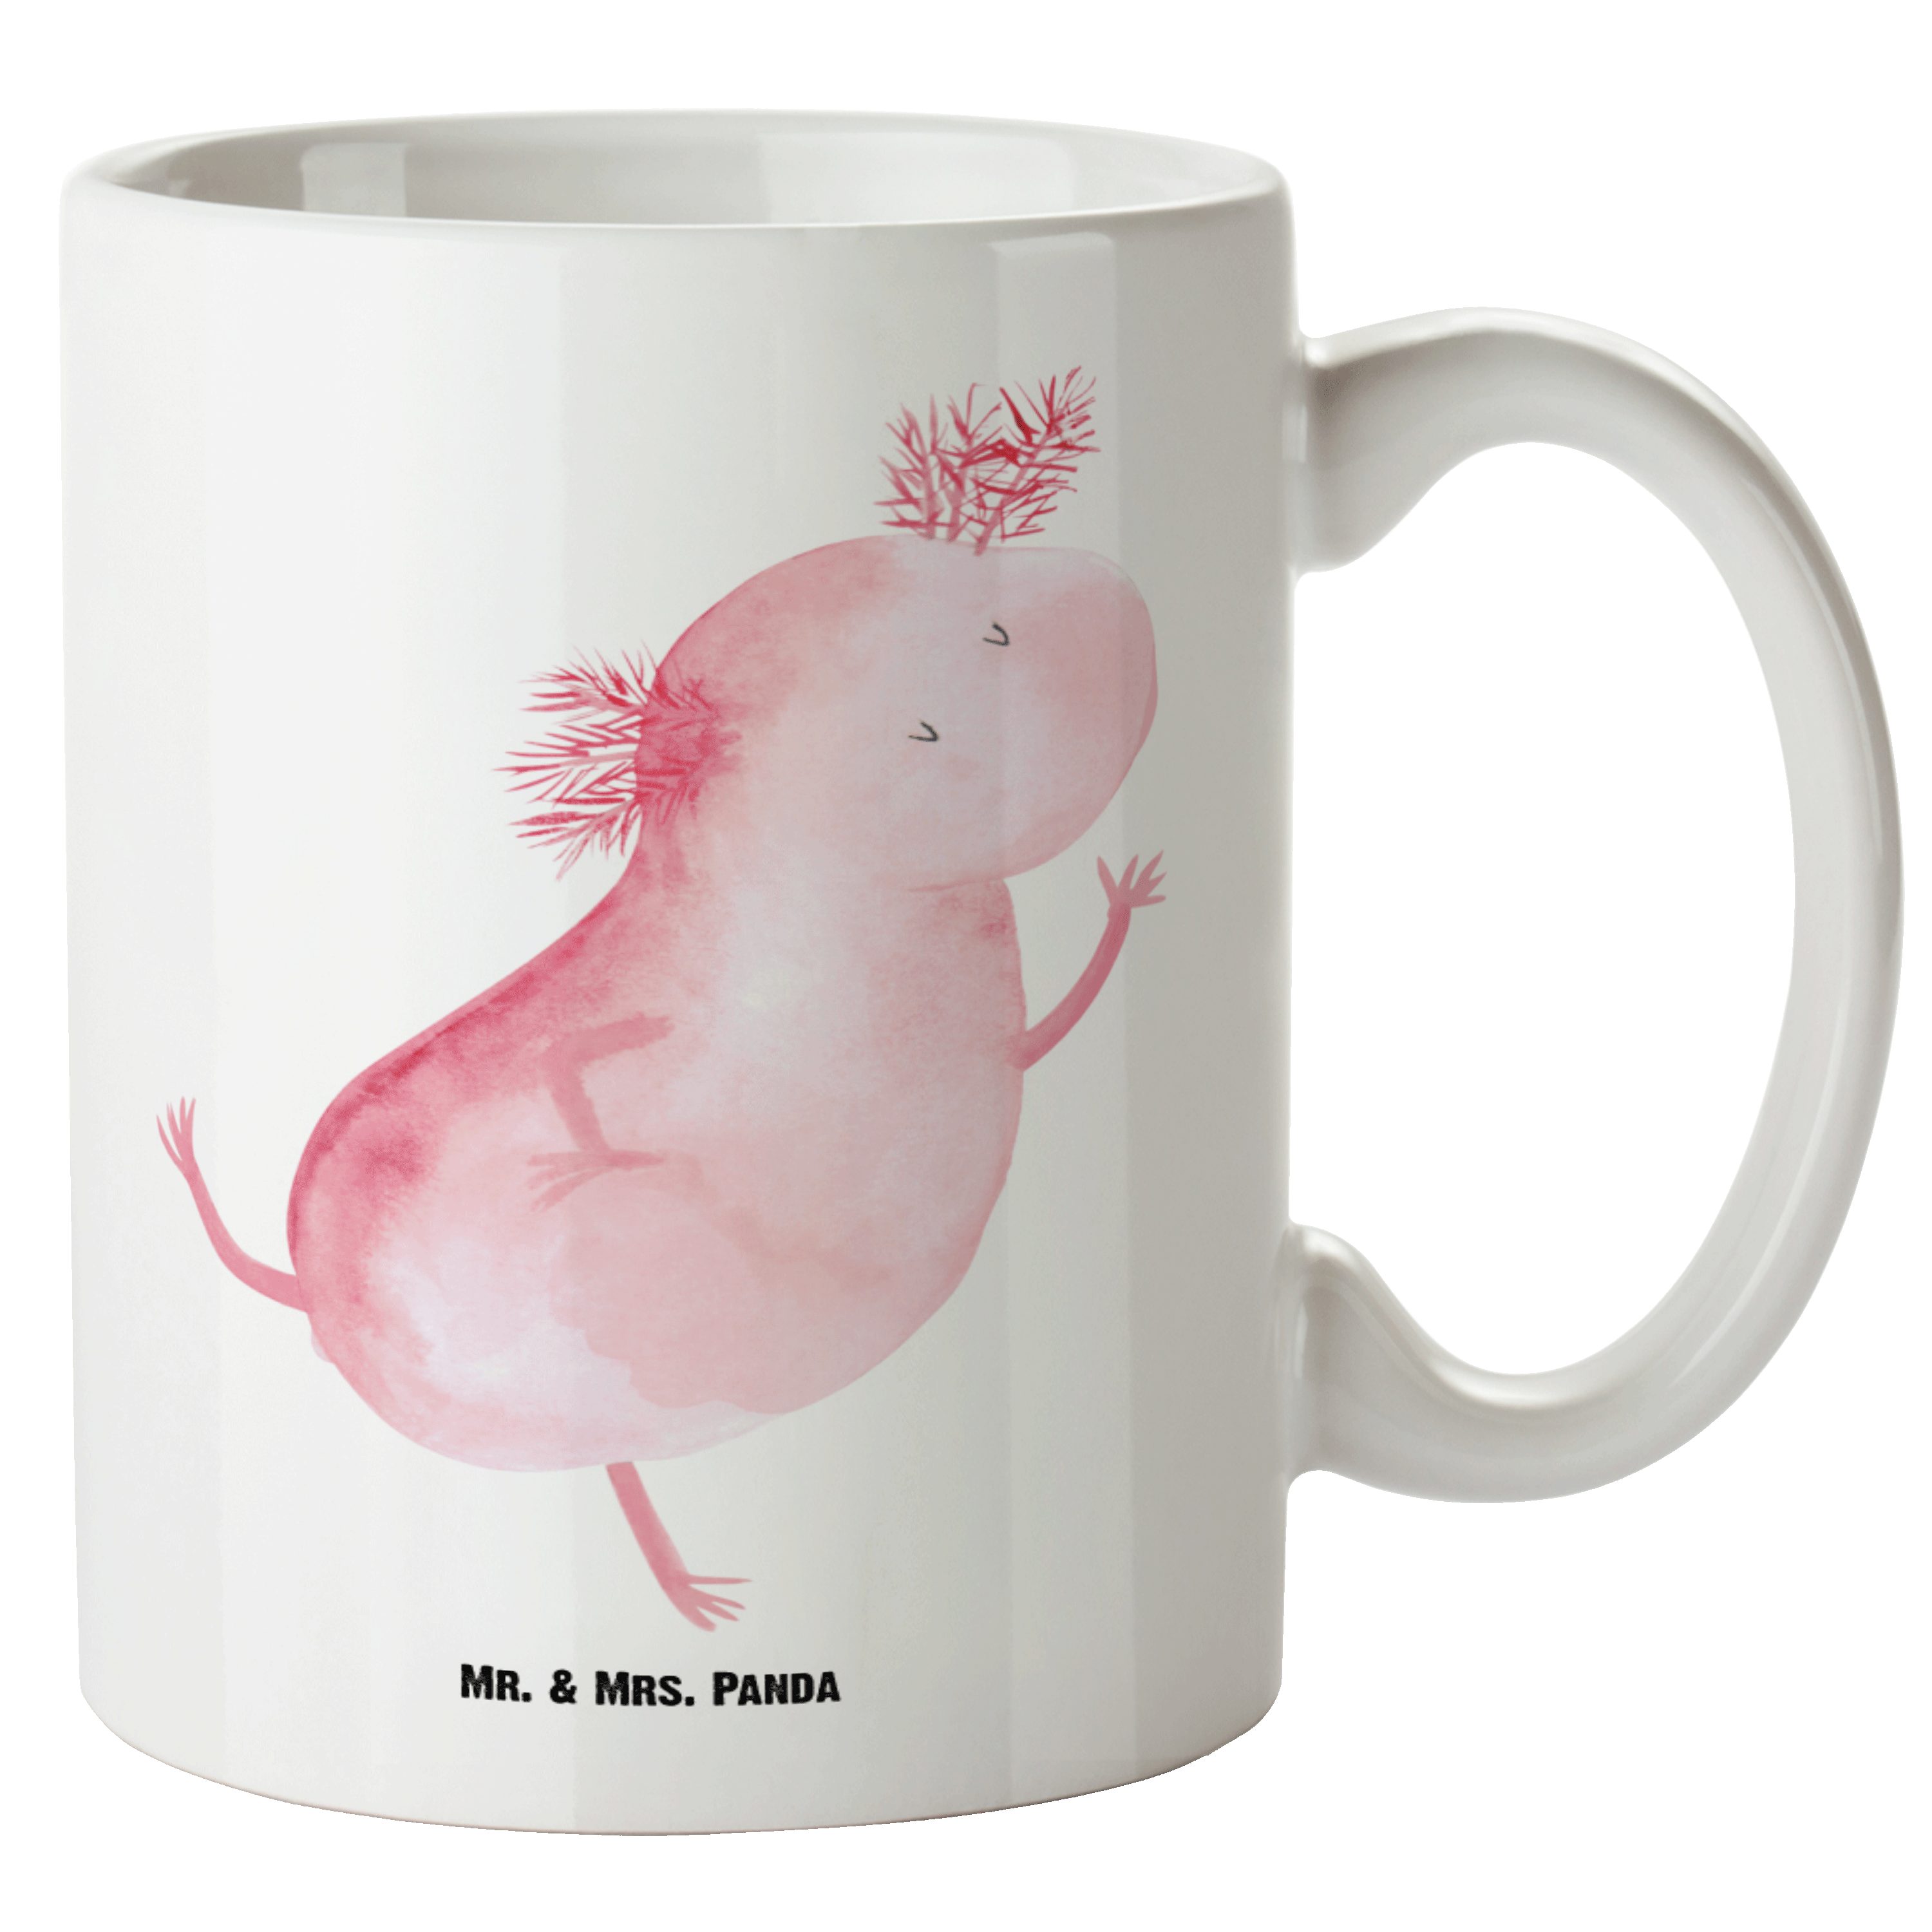 Mr. & Mrs. Panda Tasse Axolotl tanzt - Weiß - Geschenk, Schwanzlurch, XL Becher, Molch, Gros, XL Tasse Keramik